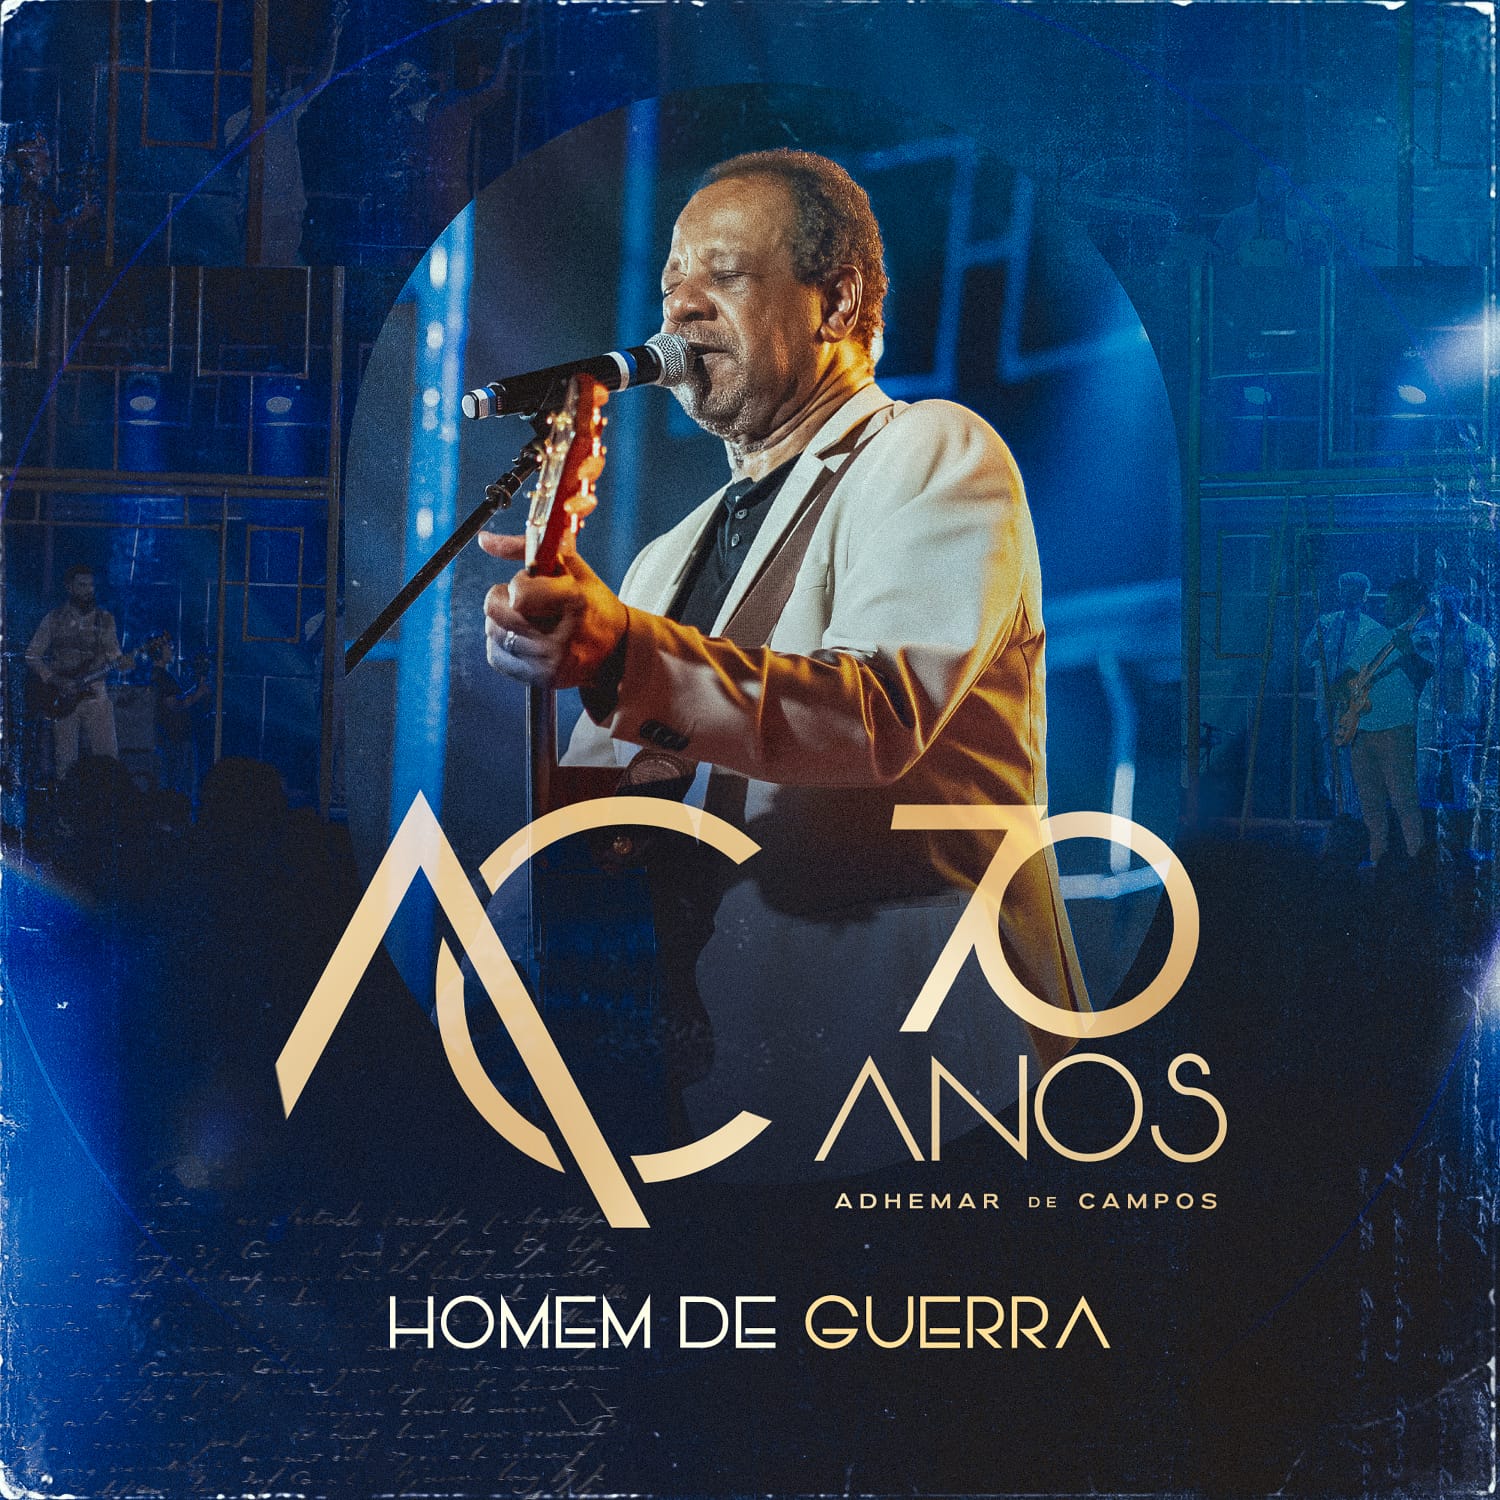 Adhemar de Campos lança “Homem de Guerra”, uma bela canção atemporal